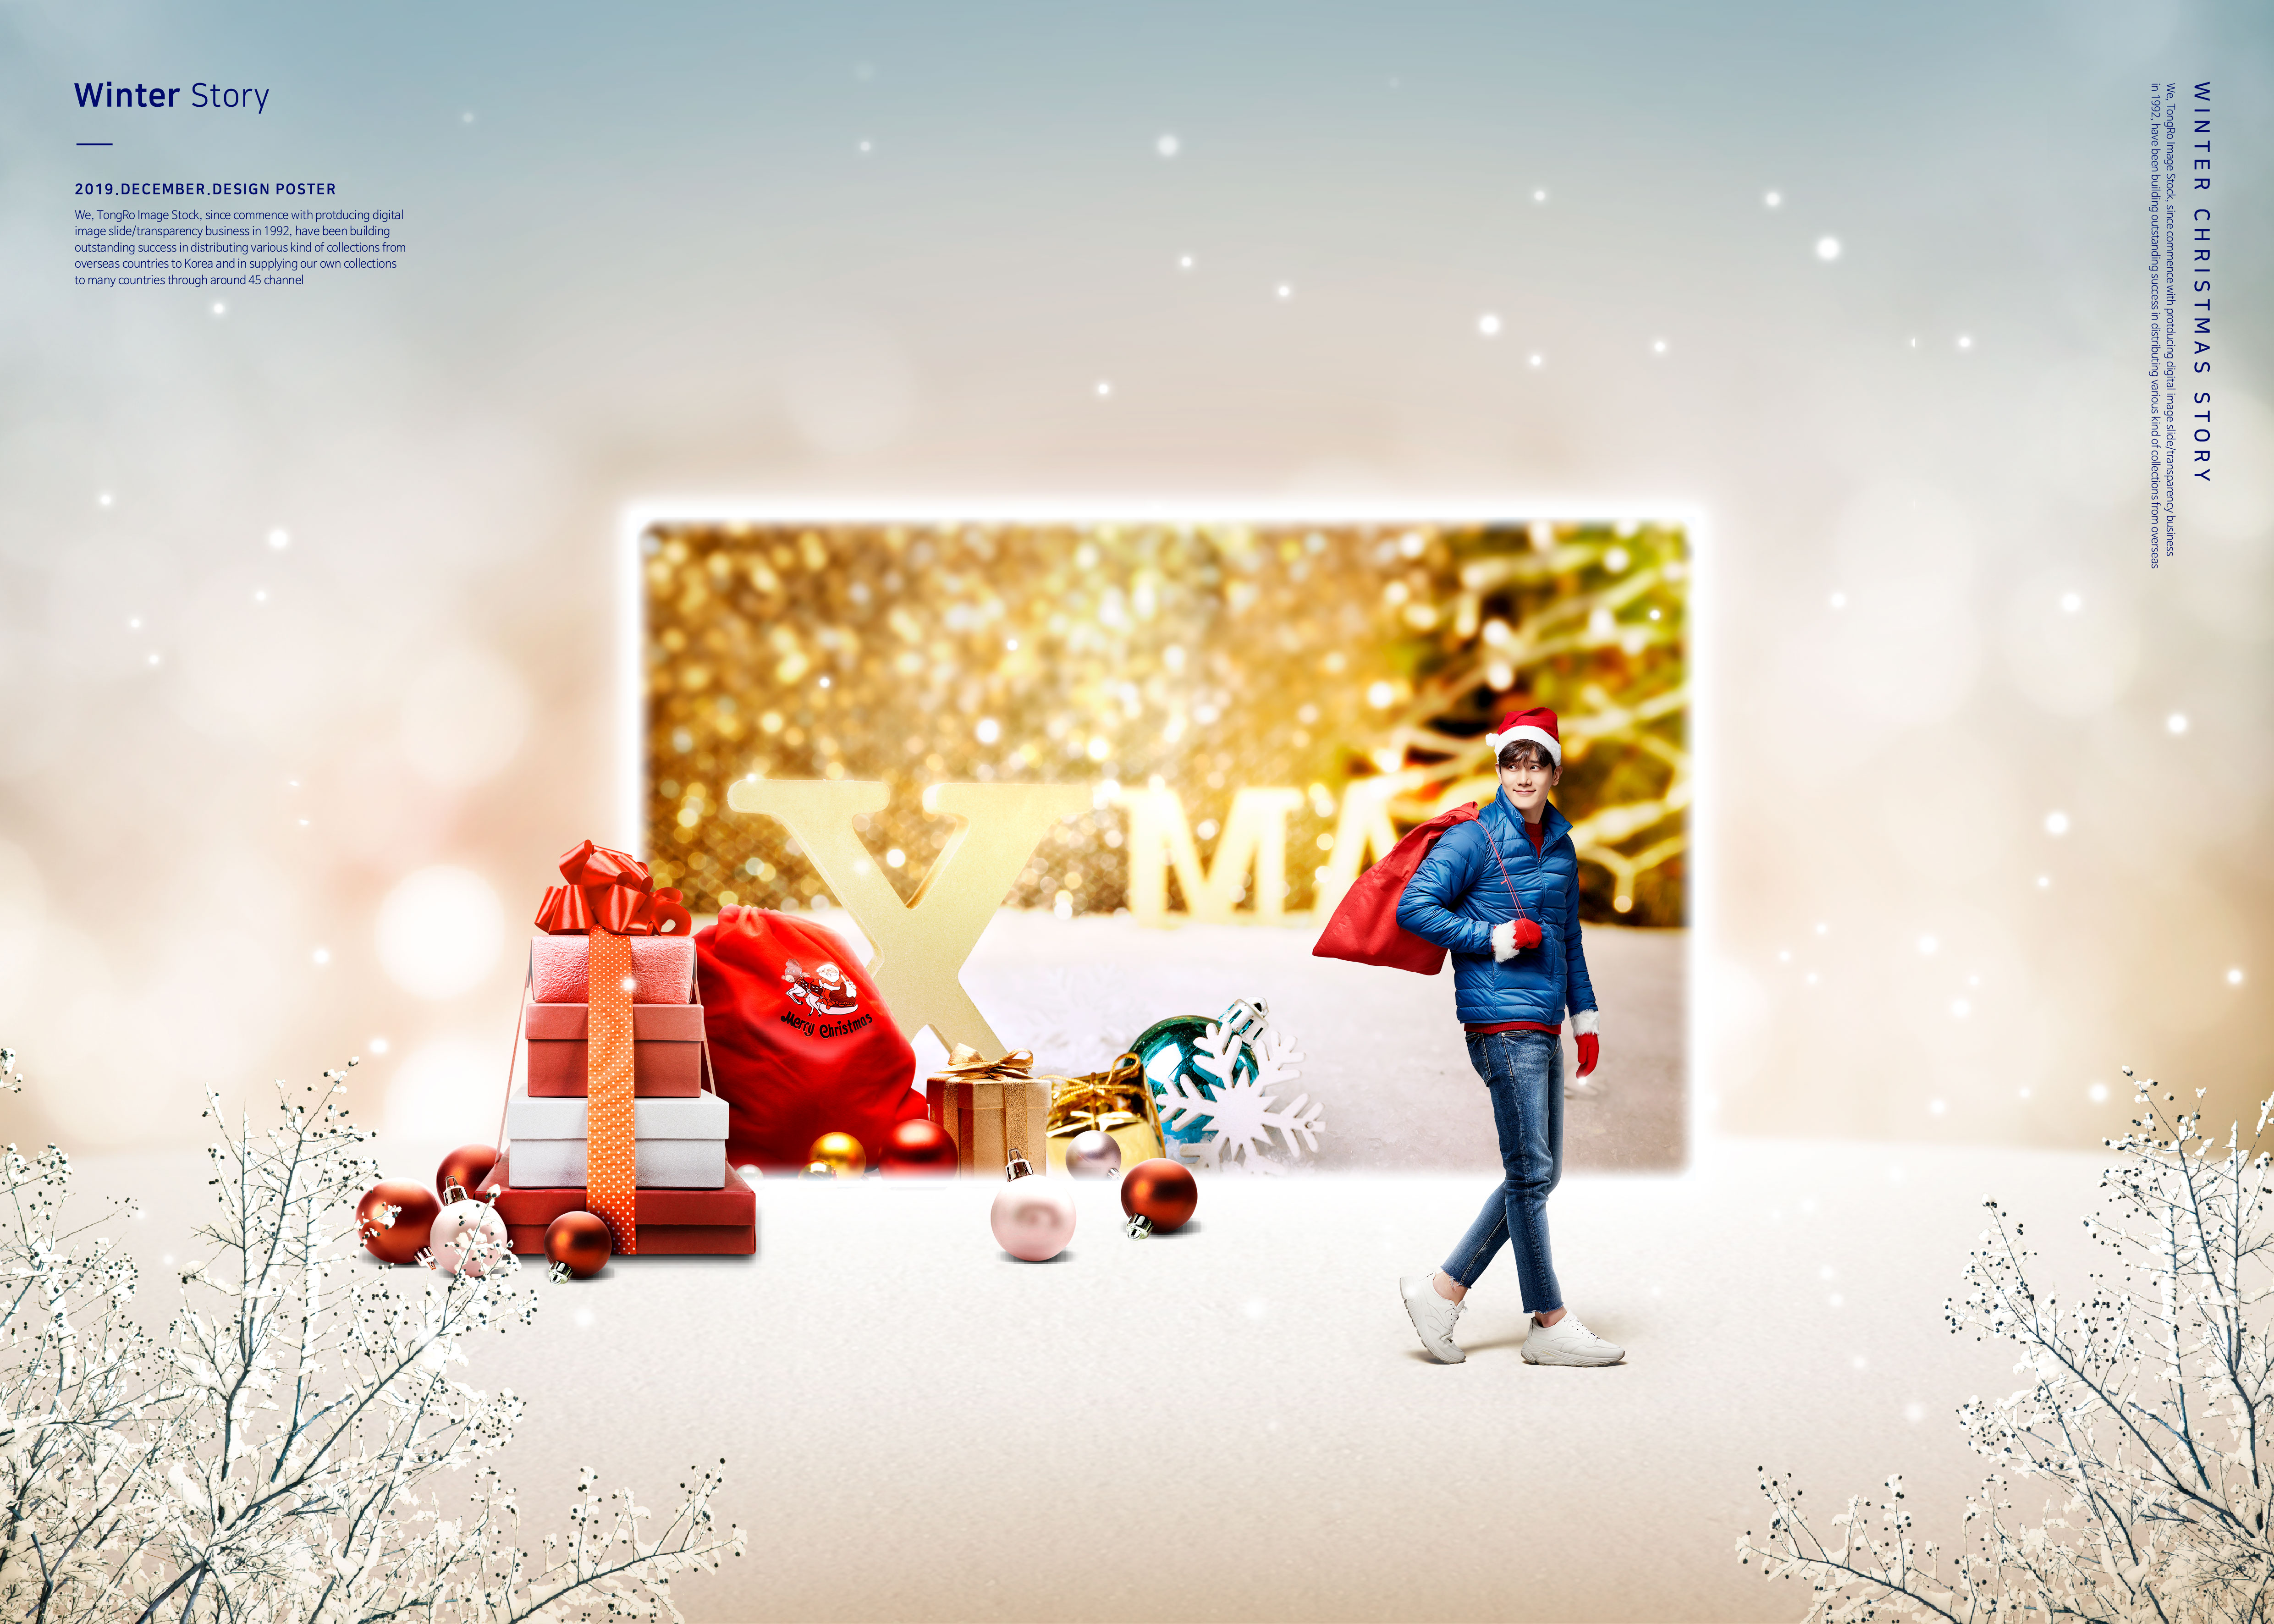 冬季故事圣诞主题海报/贺卡设计素材插图